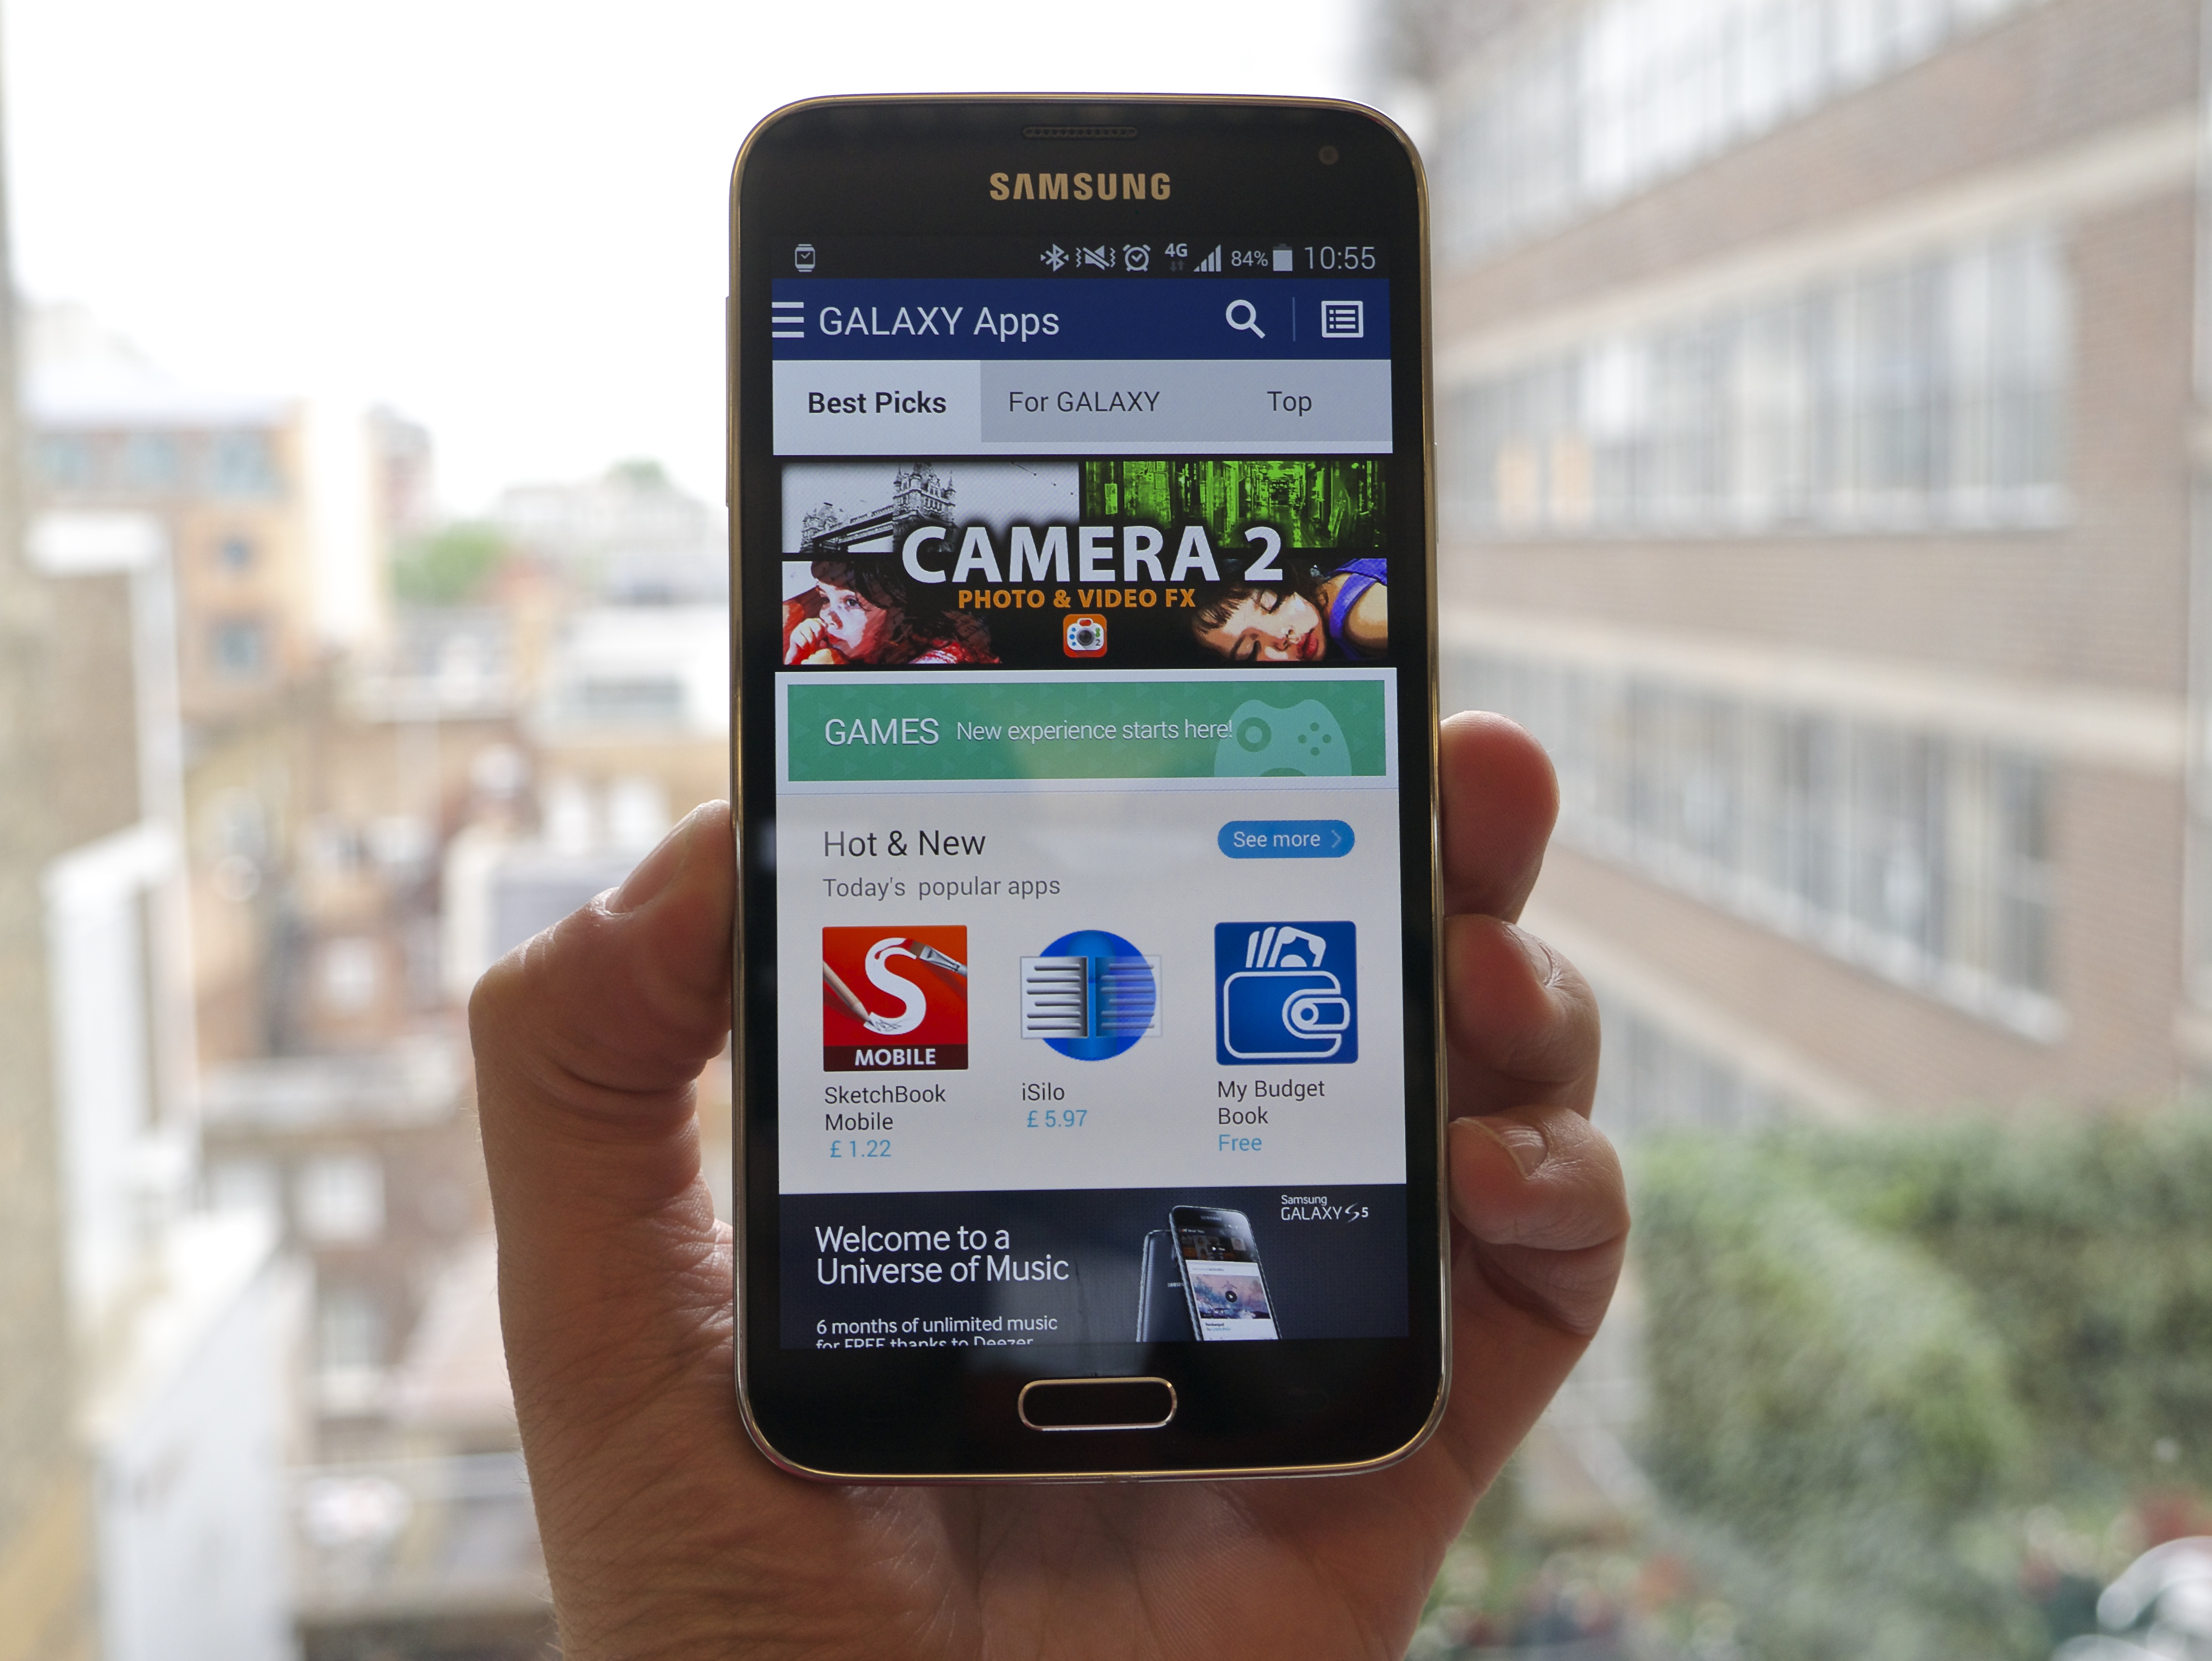 Toko aplikasi Samsung Android diluncurkan kembali sebagai Samsung Galaxy Aplikasi